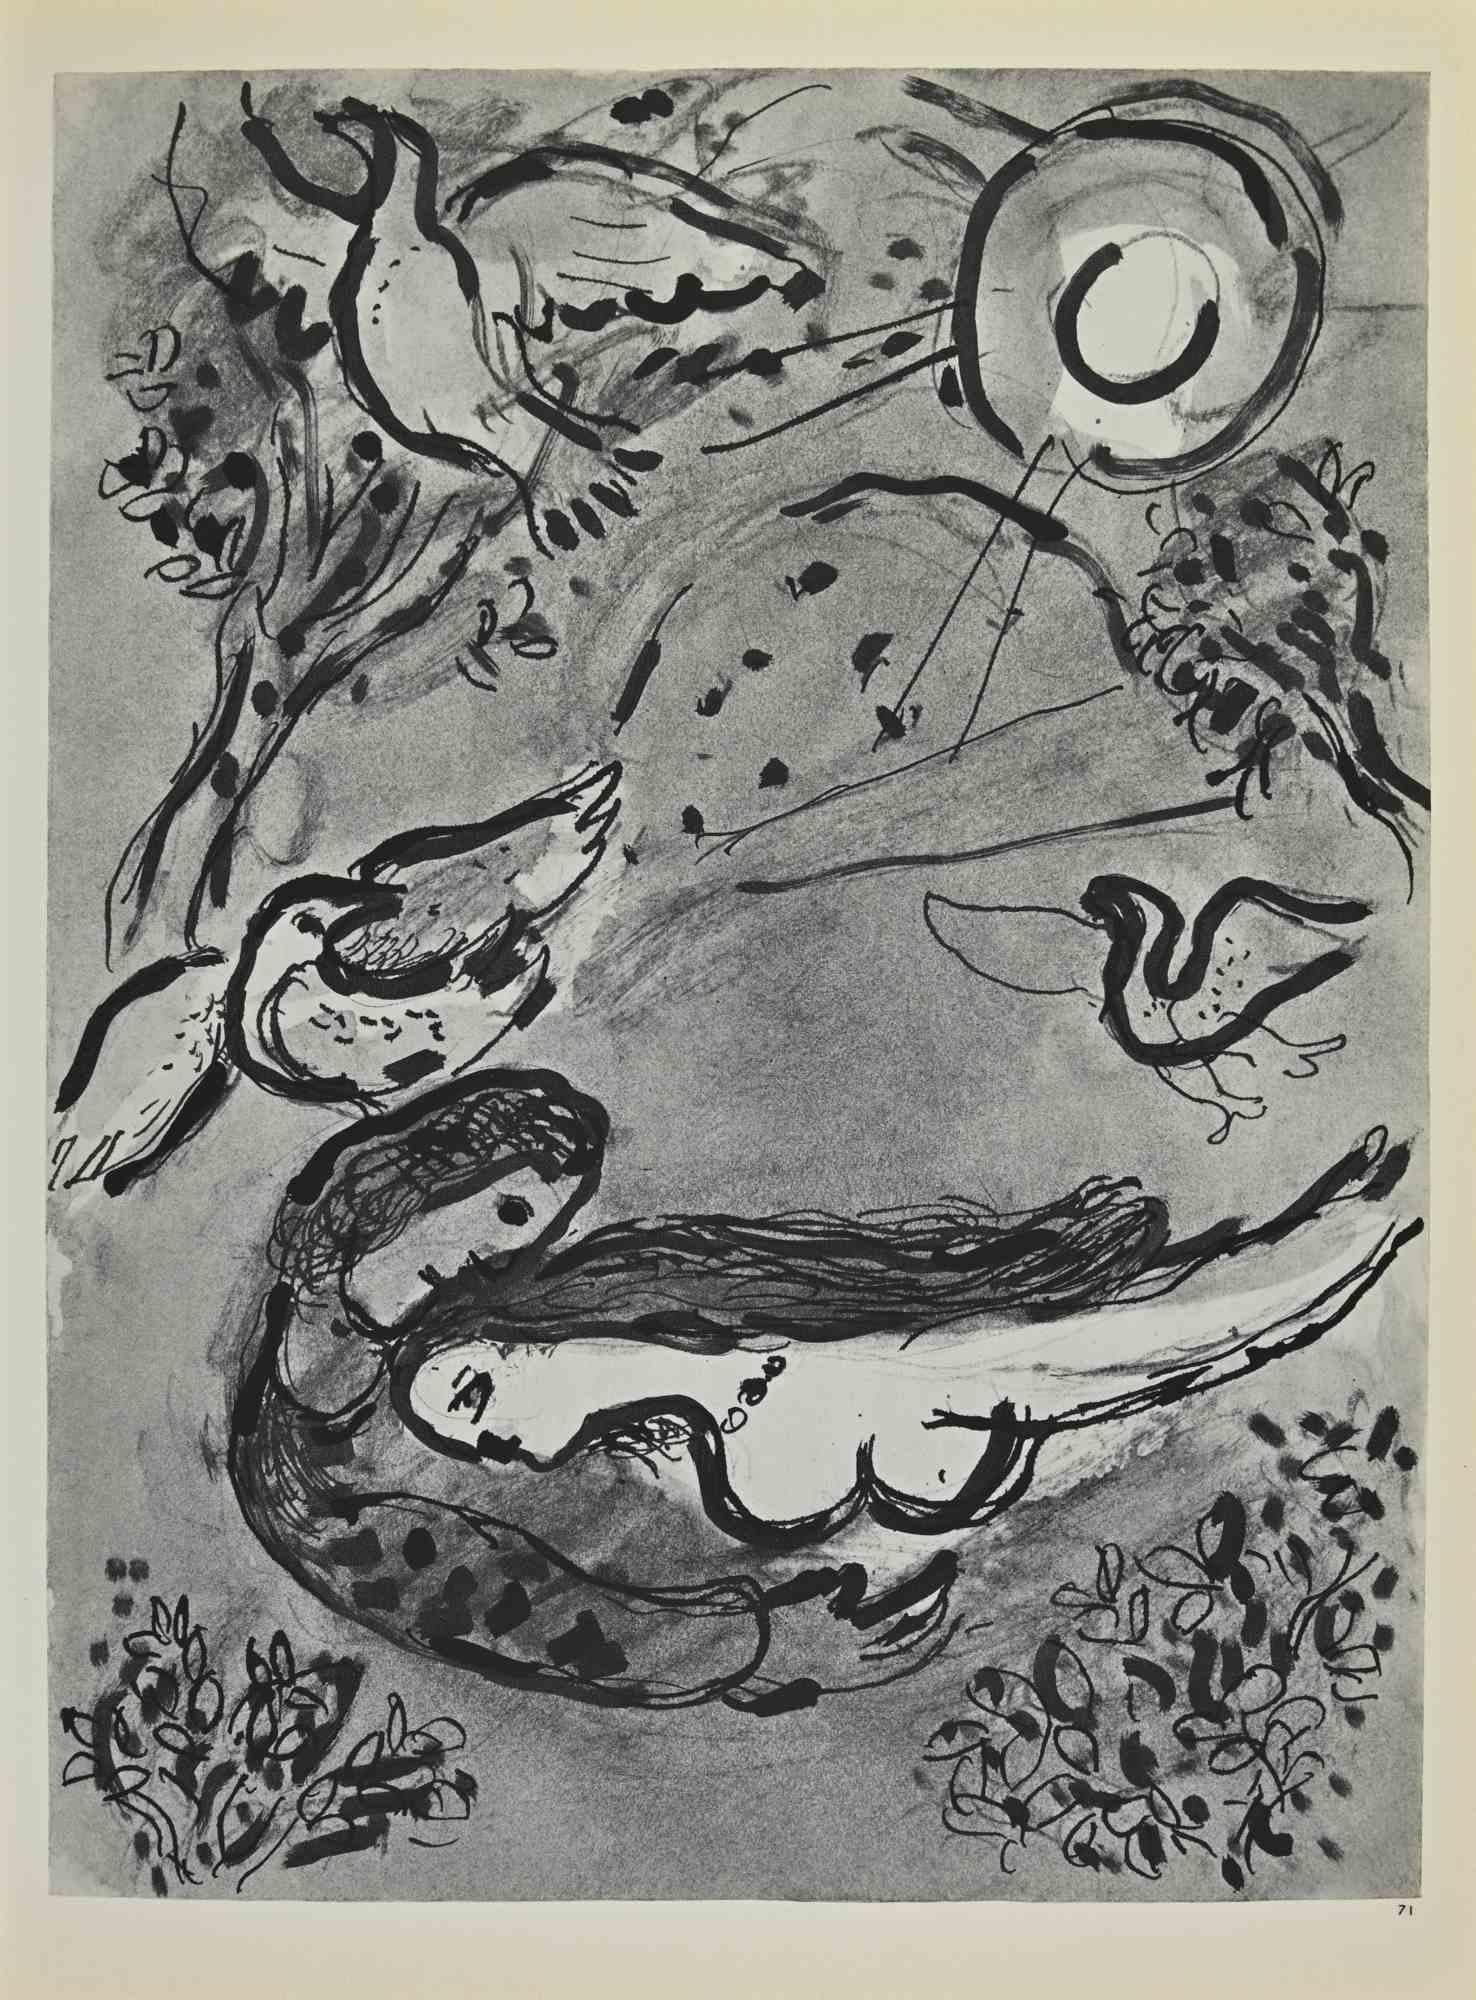 Das Hohelied der Liebe ist ein Kunstwerk von Marc Chagall aus den 1960er Jahren.

Lithographie auf braun getöntem Papier, ohne Signatur.

Lithographie auf beiden Blättern.

Auflage von 6500 unsignierten Lithografien. Gedruckt von Mourlot und